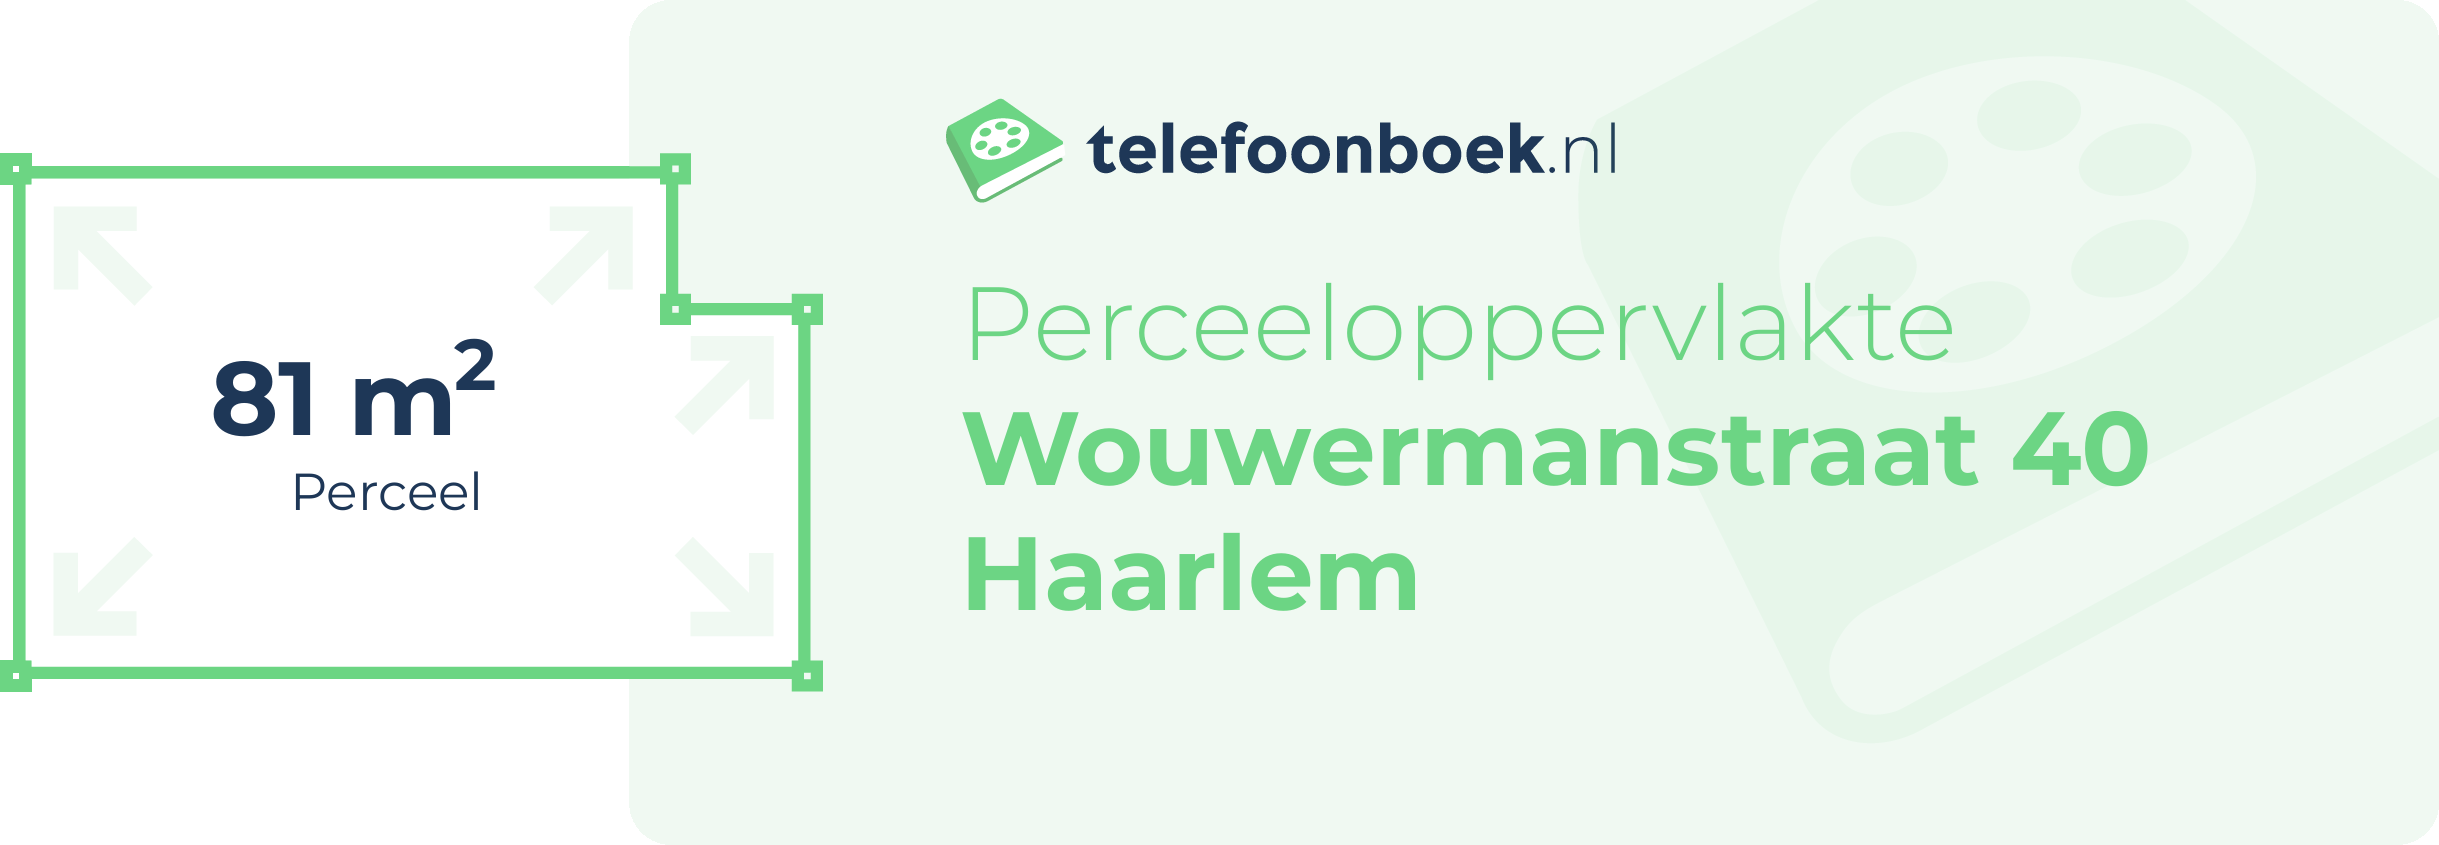 Perceeloppervlakte Wouwermanstraat 40 Haarlem